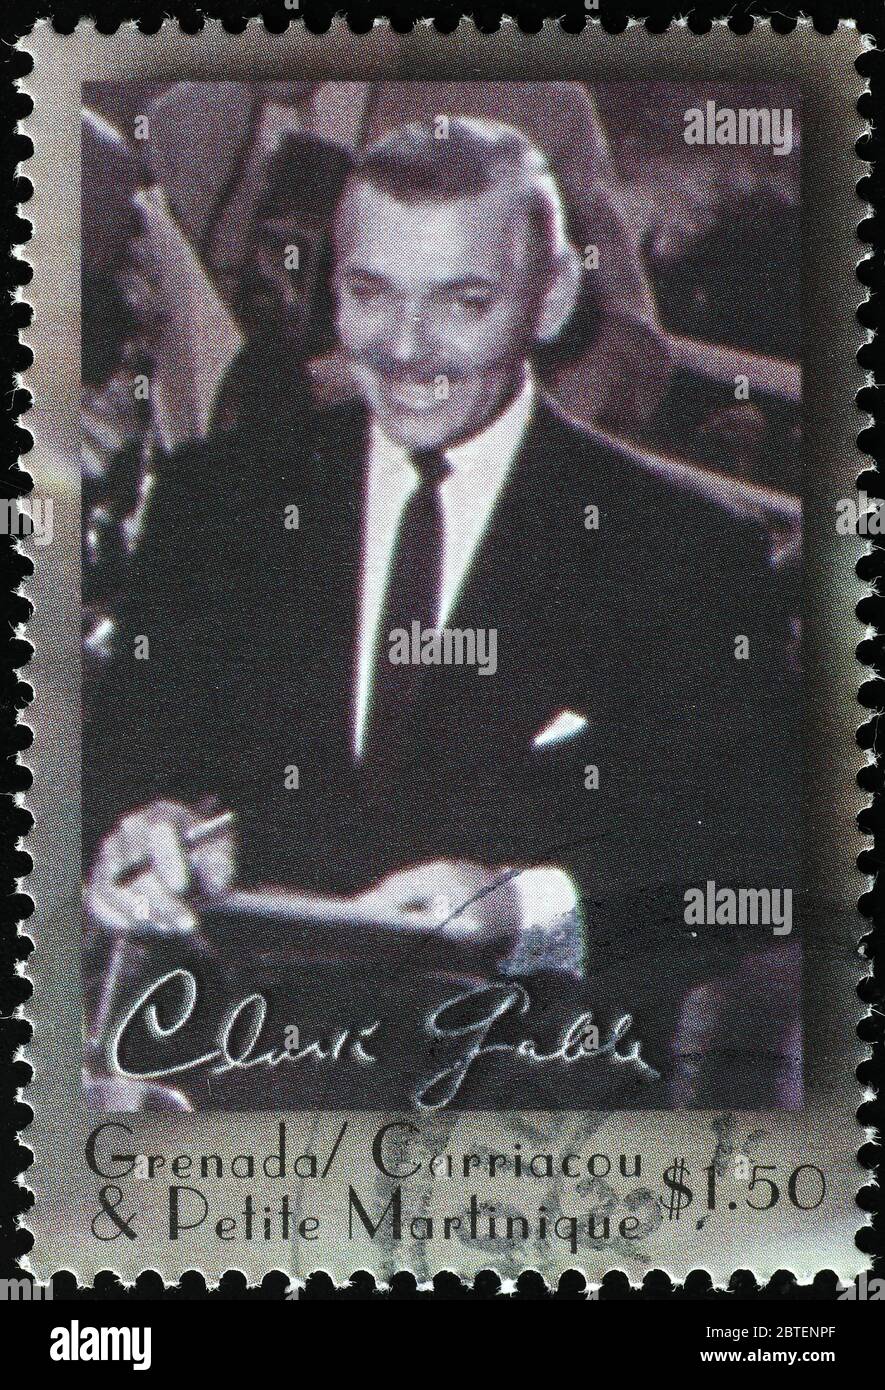 Clark Gable und seine Unterschrift auf Briefmarke Stockfoto